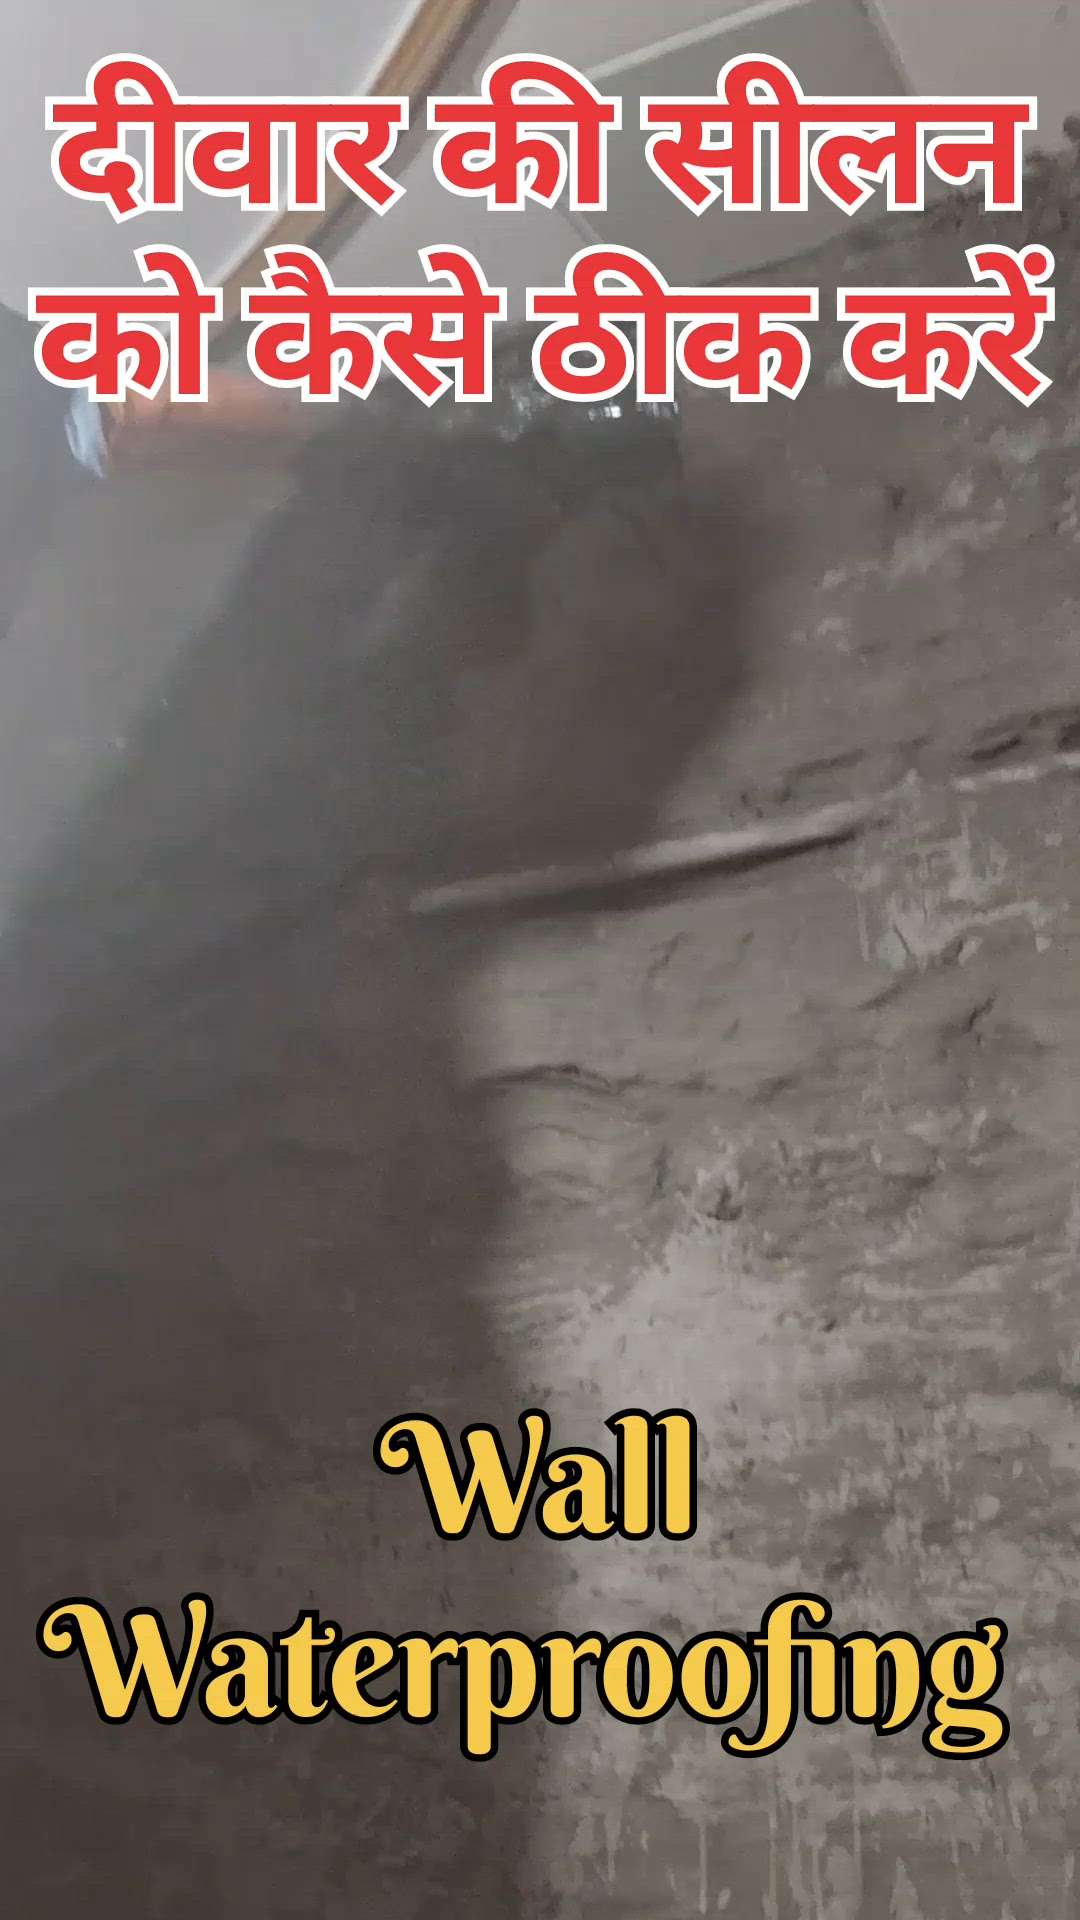 #wallwaterproofing 
#seepageonwall
#wallswaterproofing #waterproofingtreatmentwall 
#WaterProofings